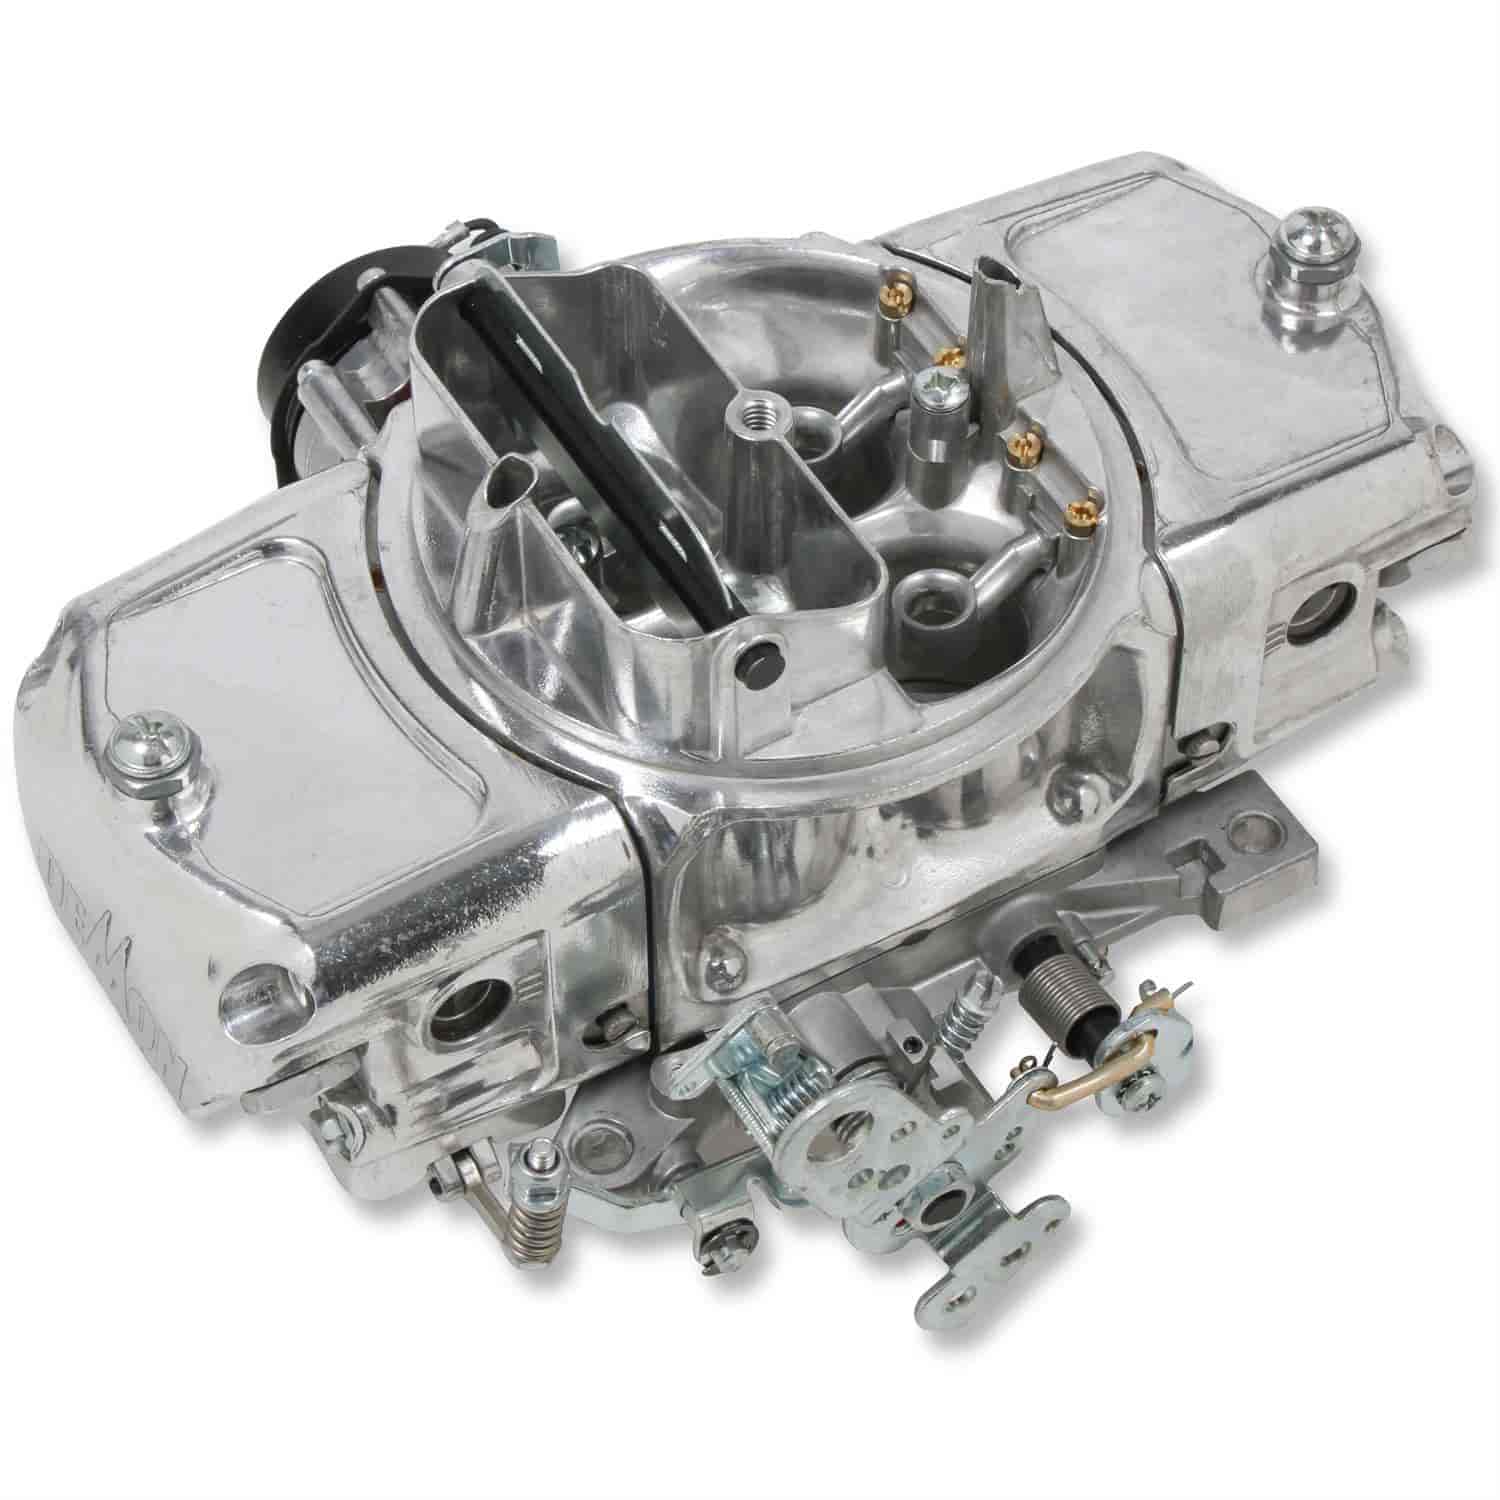 650 CFM Road Demon Carburetor [Electric Choke, Mechanical